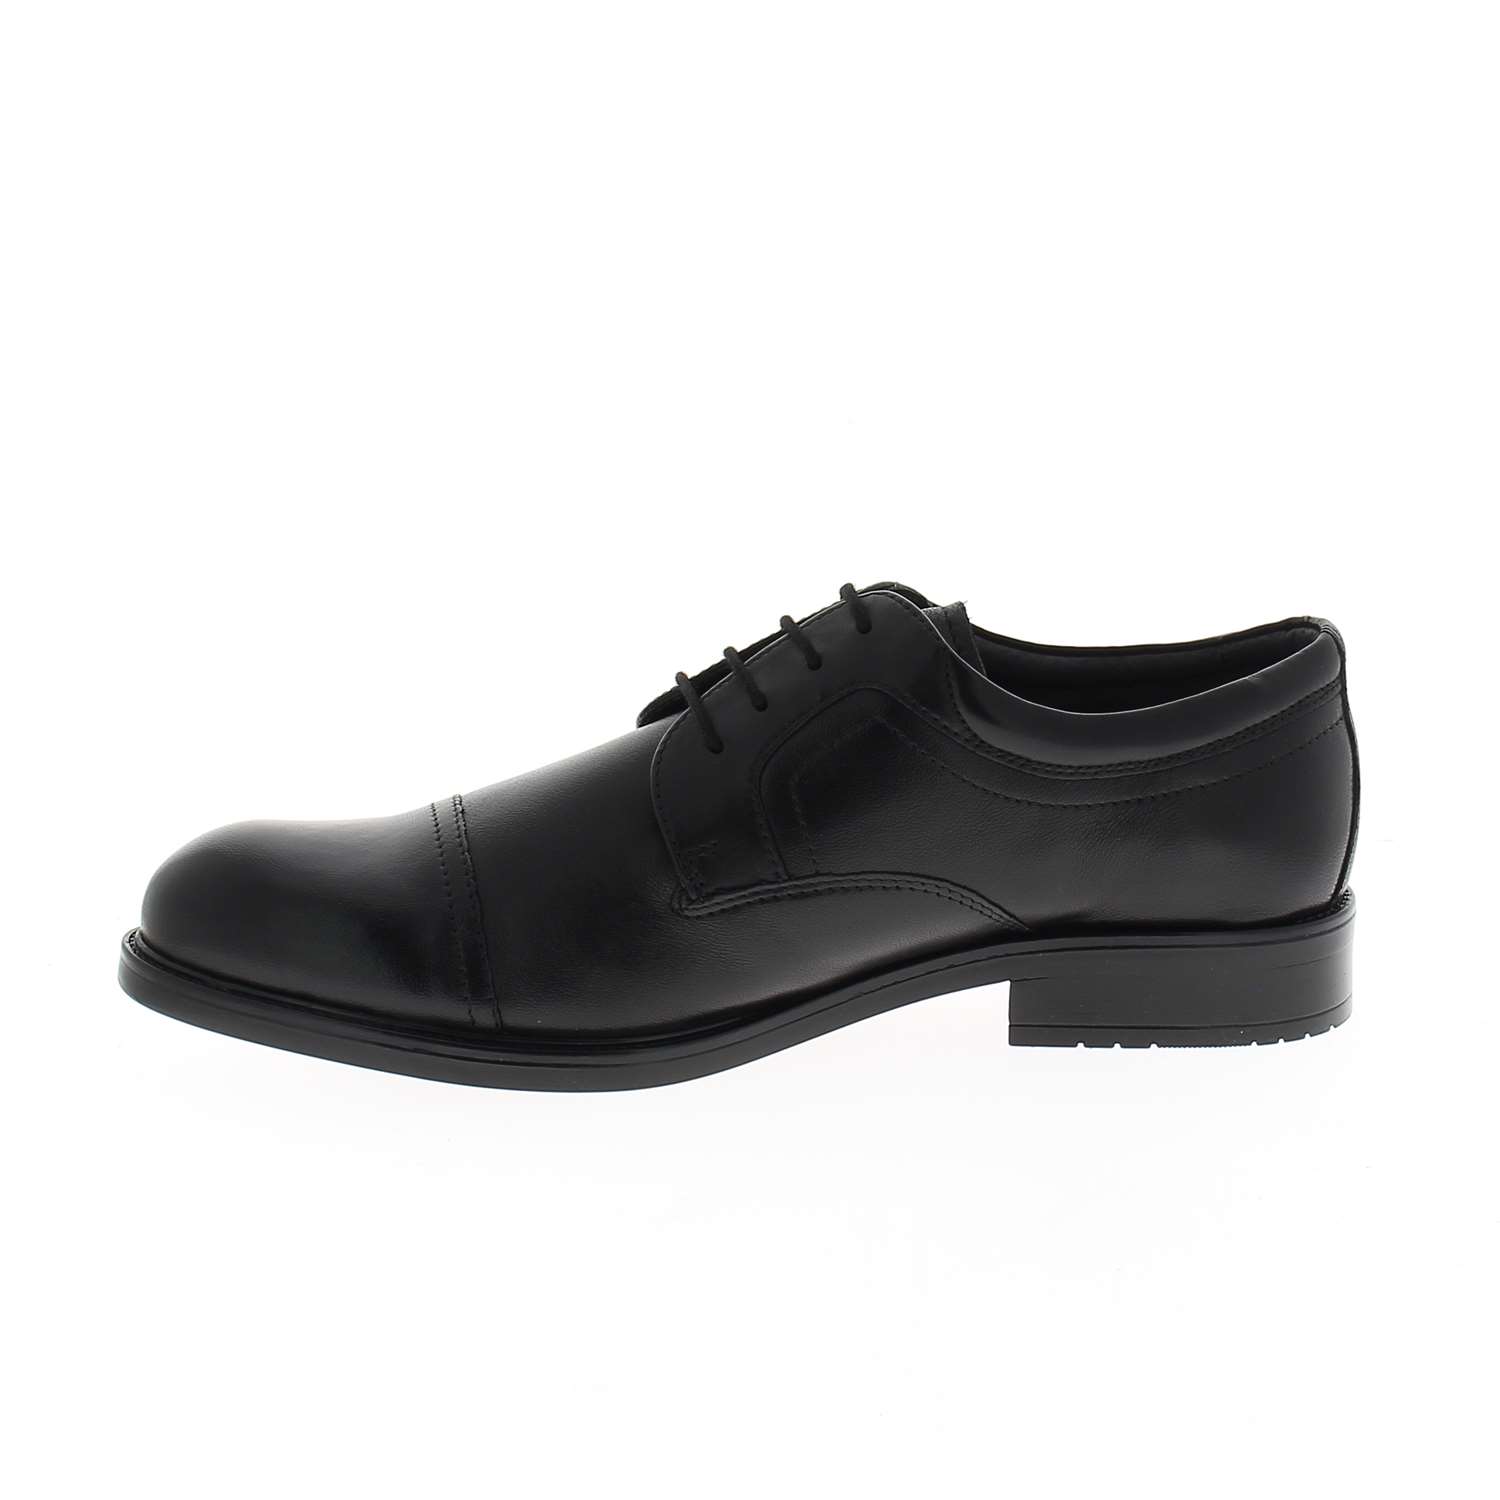 05 - APAZOU - XAPI - Chaussures à lacets - Cuir / textile